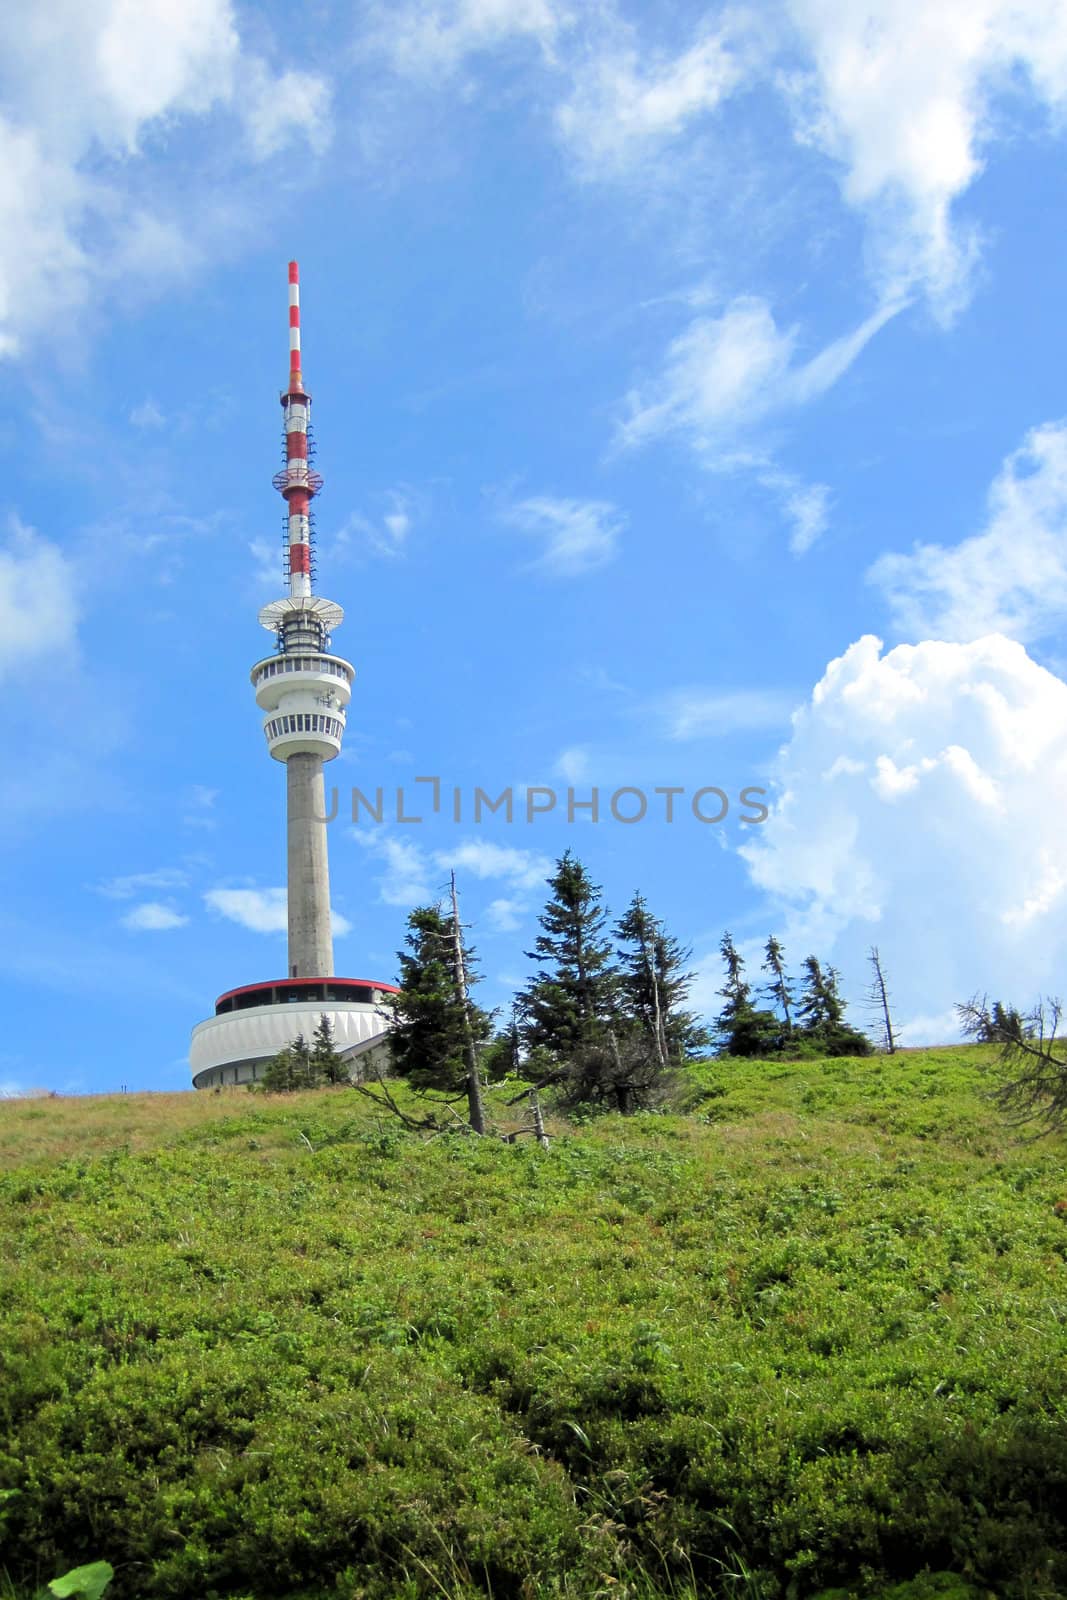 Praded tower in Jeseniky mountains in Czech republic by jonnysek